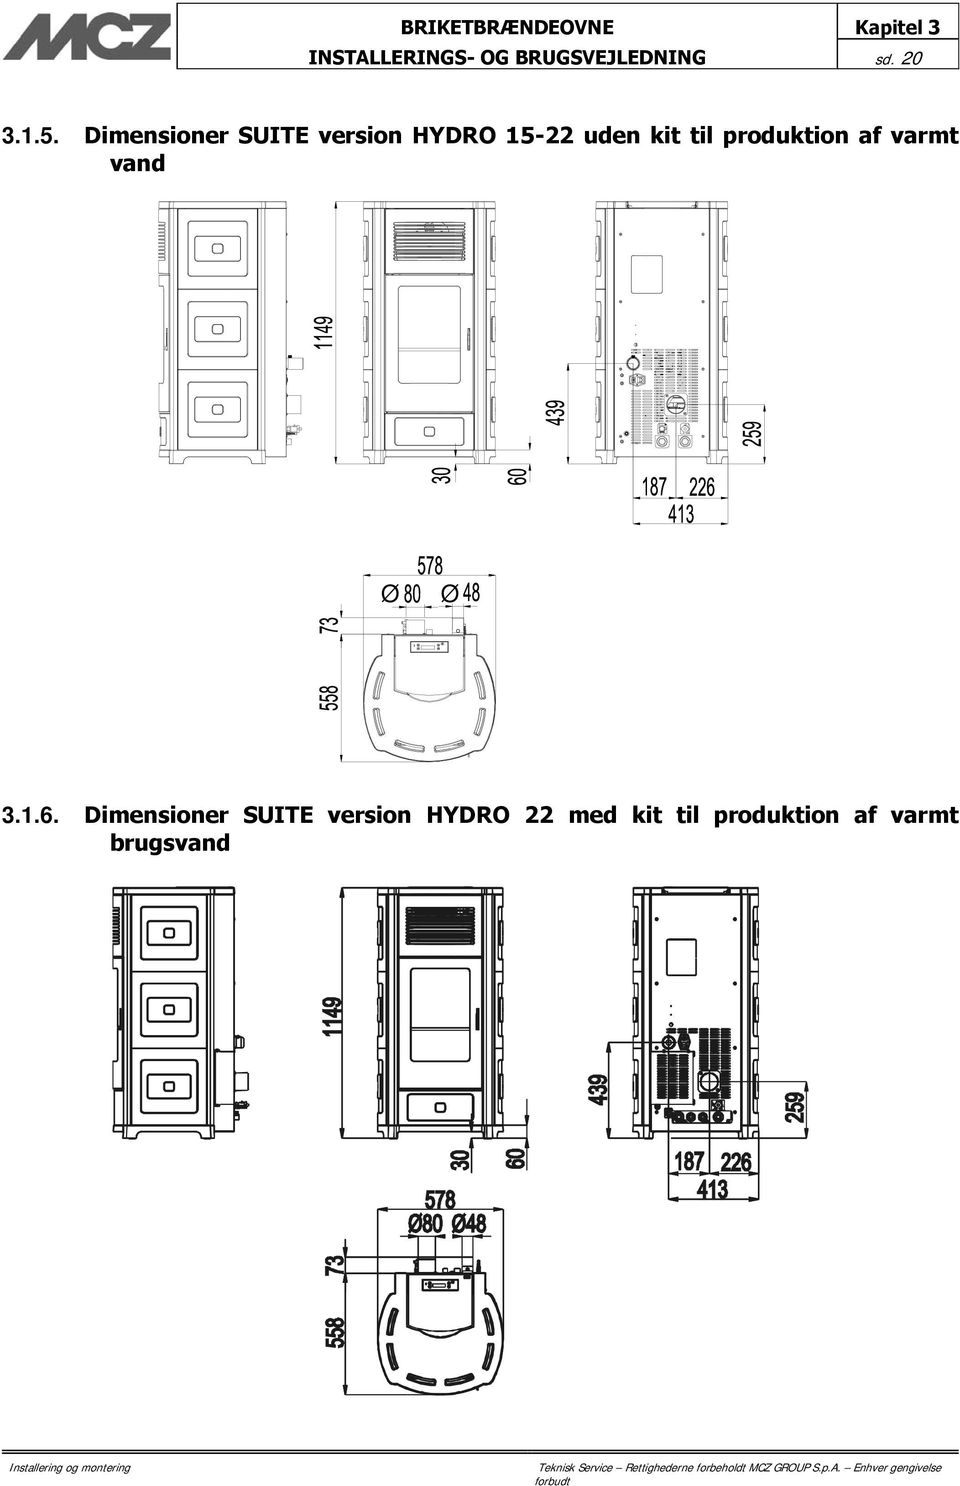 Dimensioner SUITE version HYDRO 15-22 uden kit til produktion af